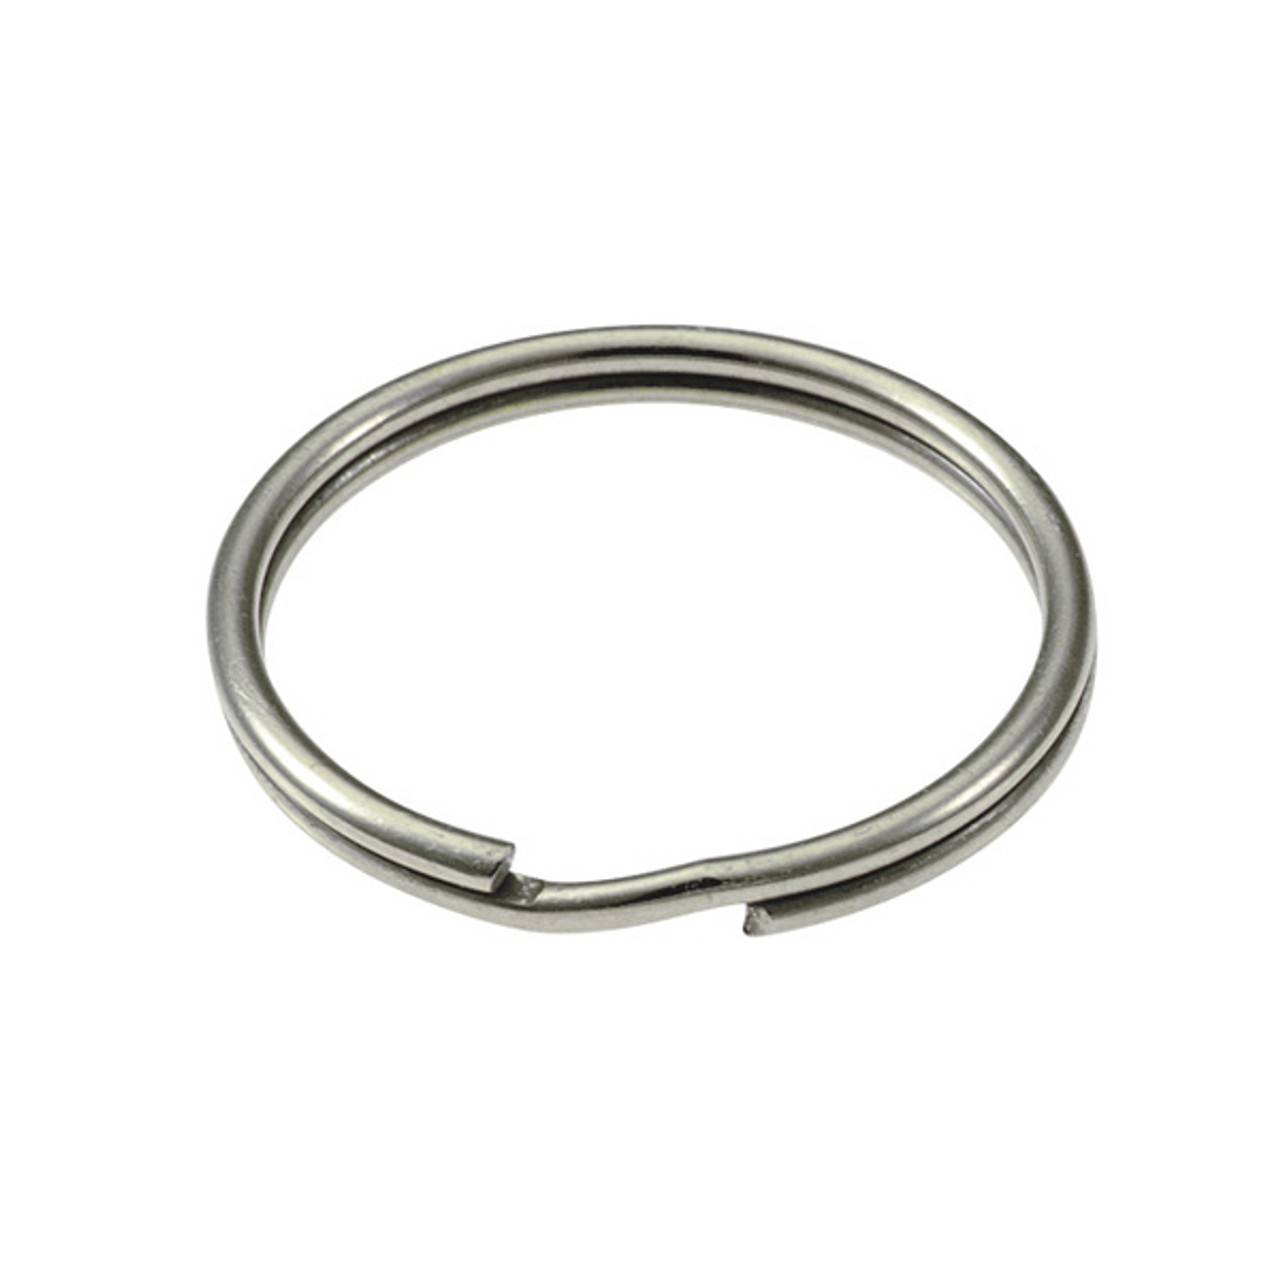 1-1/2 Inch D-Rings (Set of 2) - Nickel